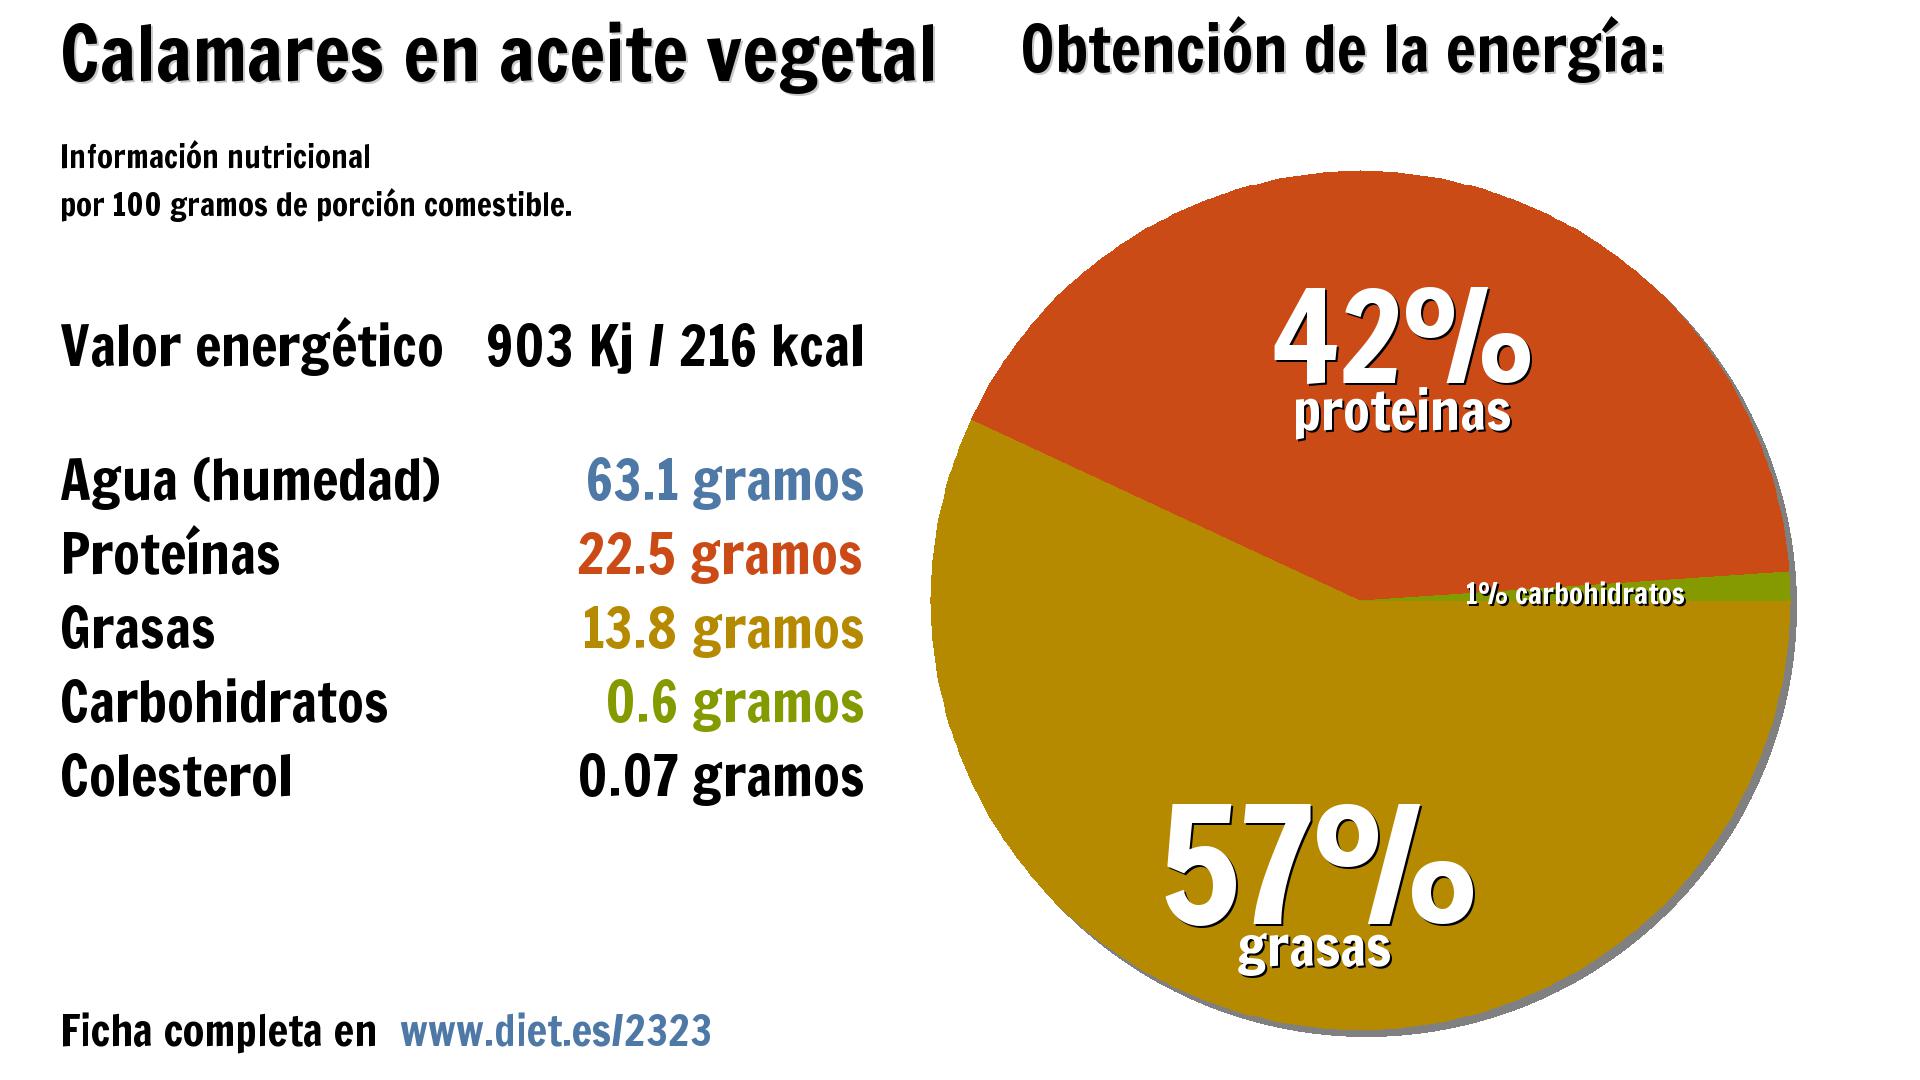 Calamares en aceite vegetal: energía 903 Kj, agua 63 g., proteínas 23 g., grasas 14 g. y carbohidratos 1 g.